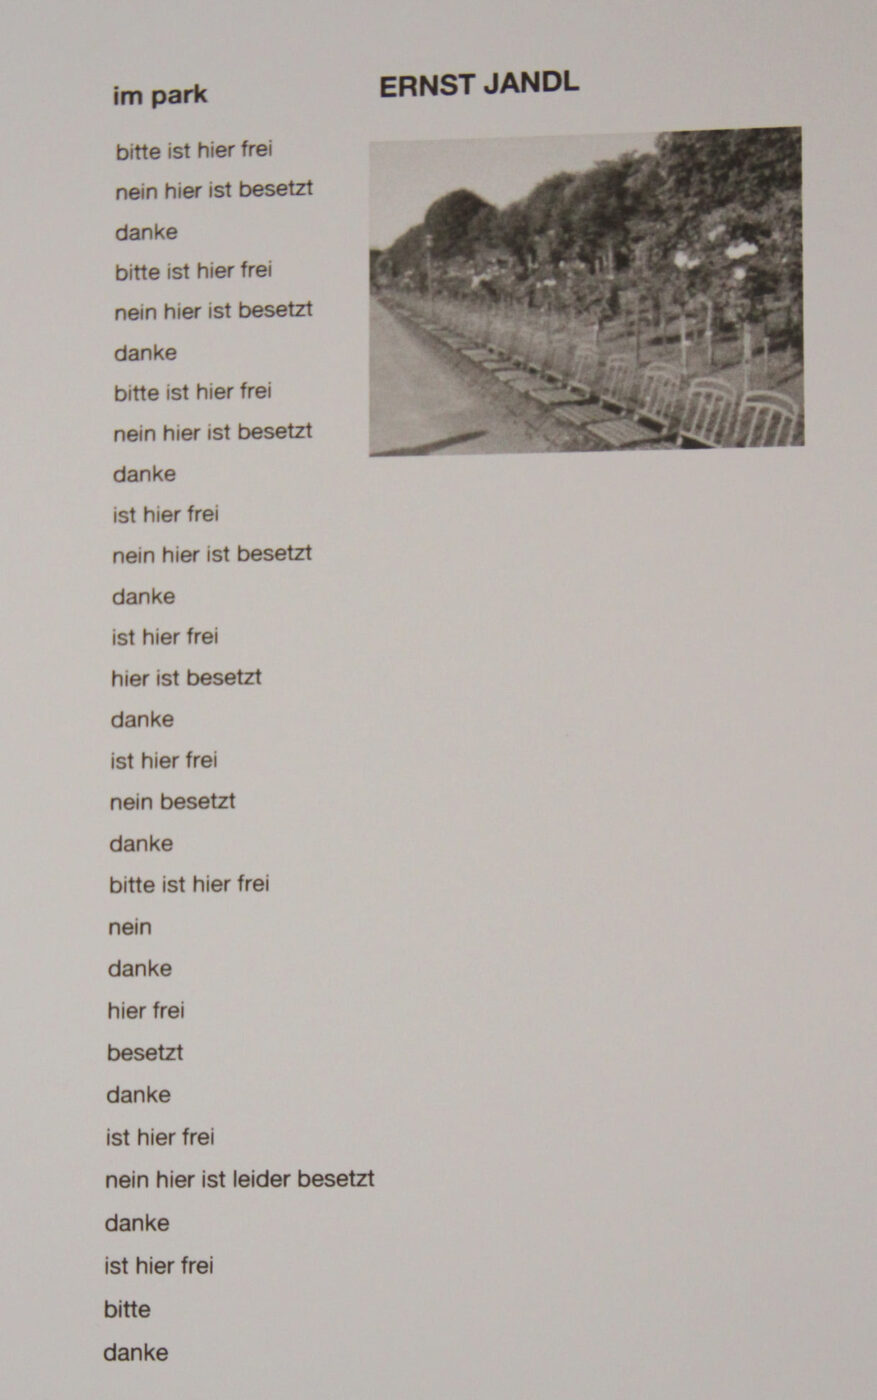 Aus der Aussstellung der Studierenden: Über den wortkünstlerischen Dichter Ernst Jandl